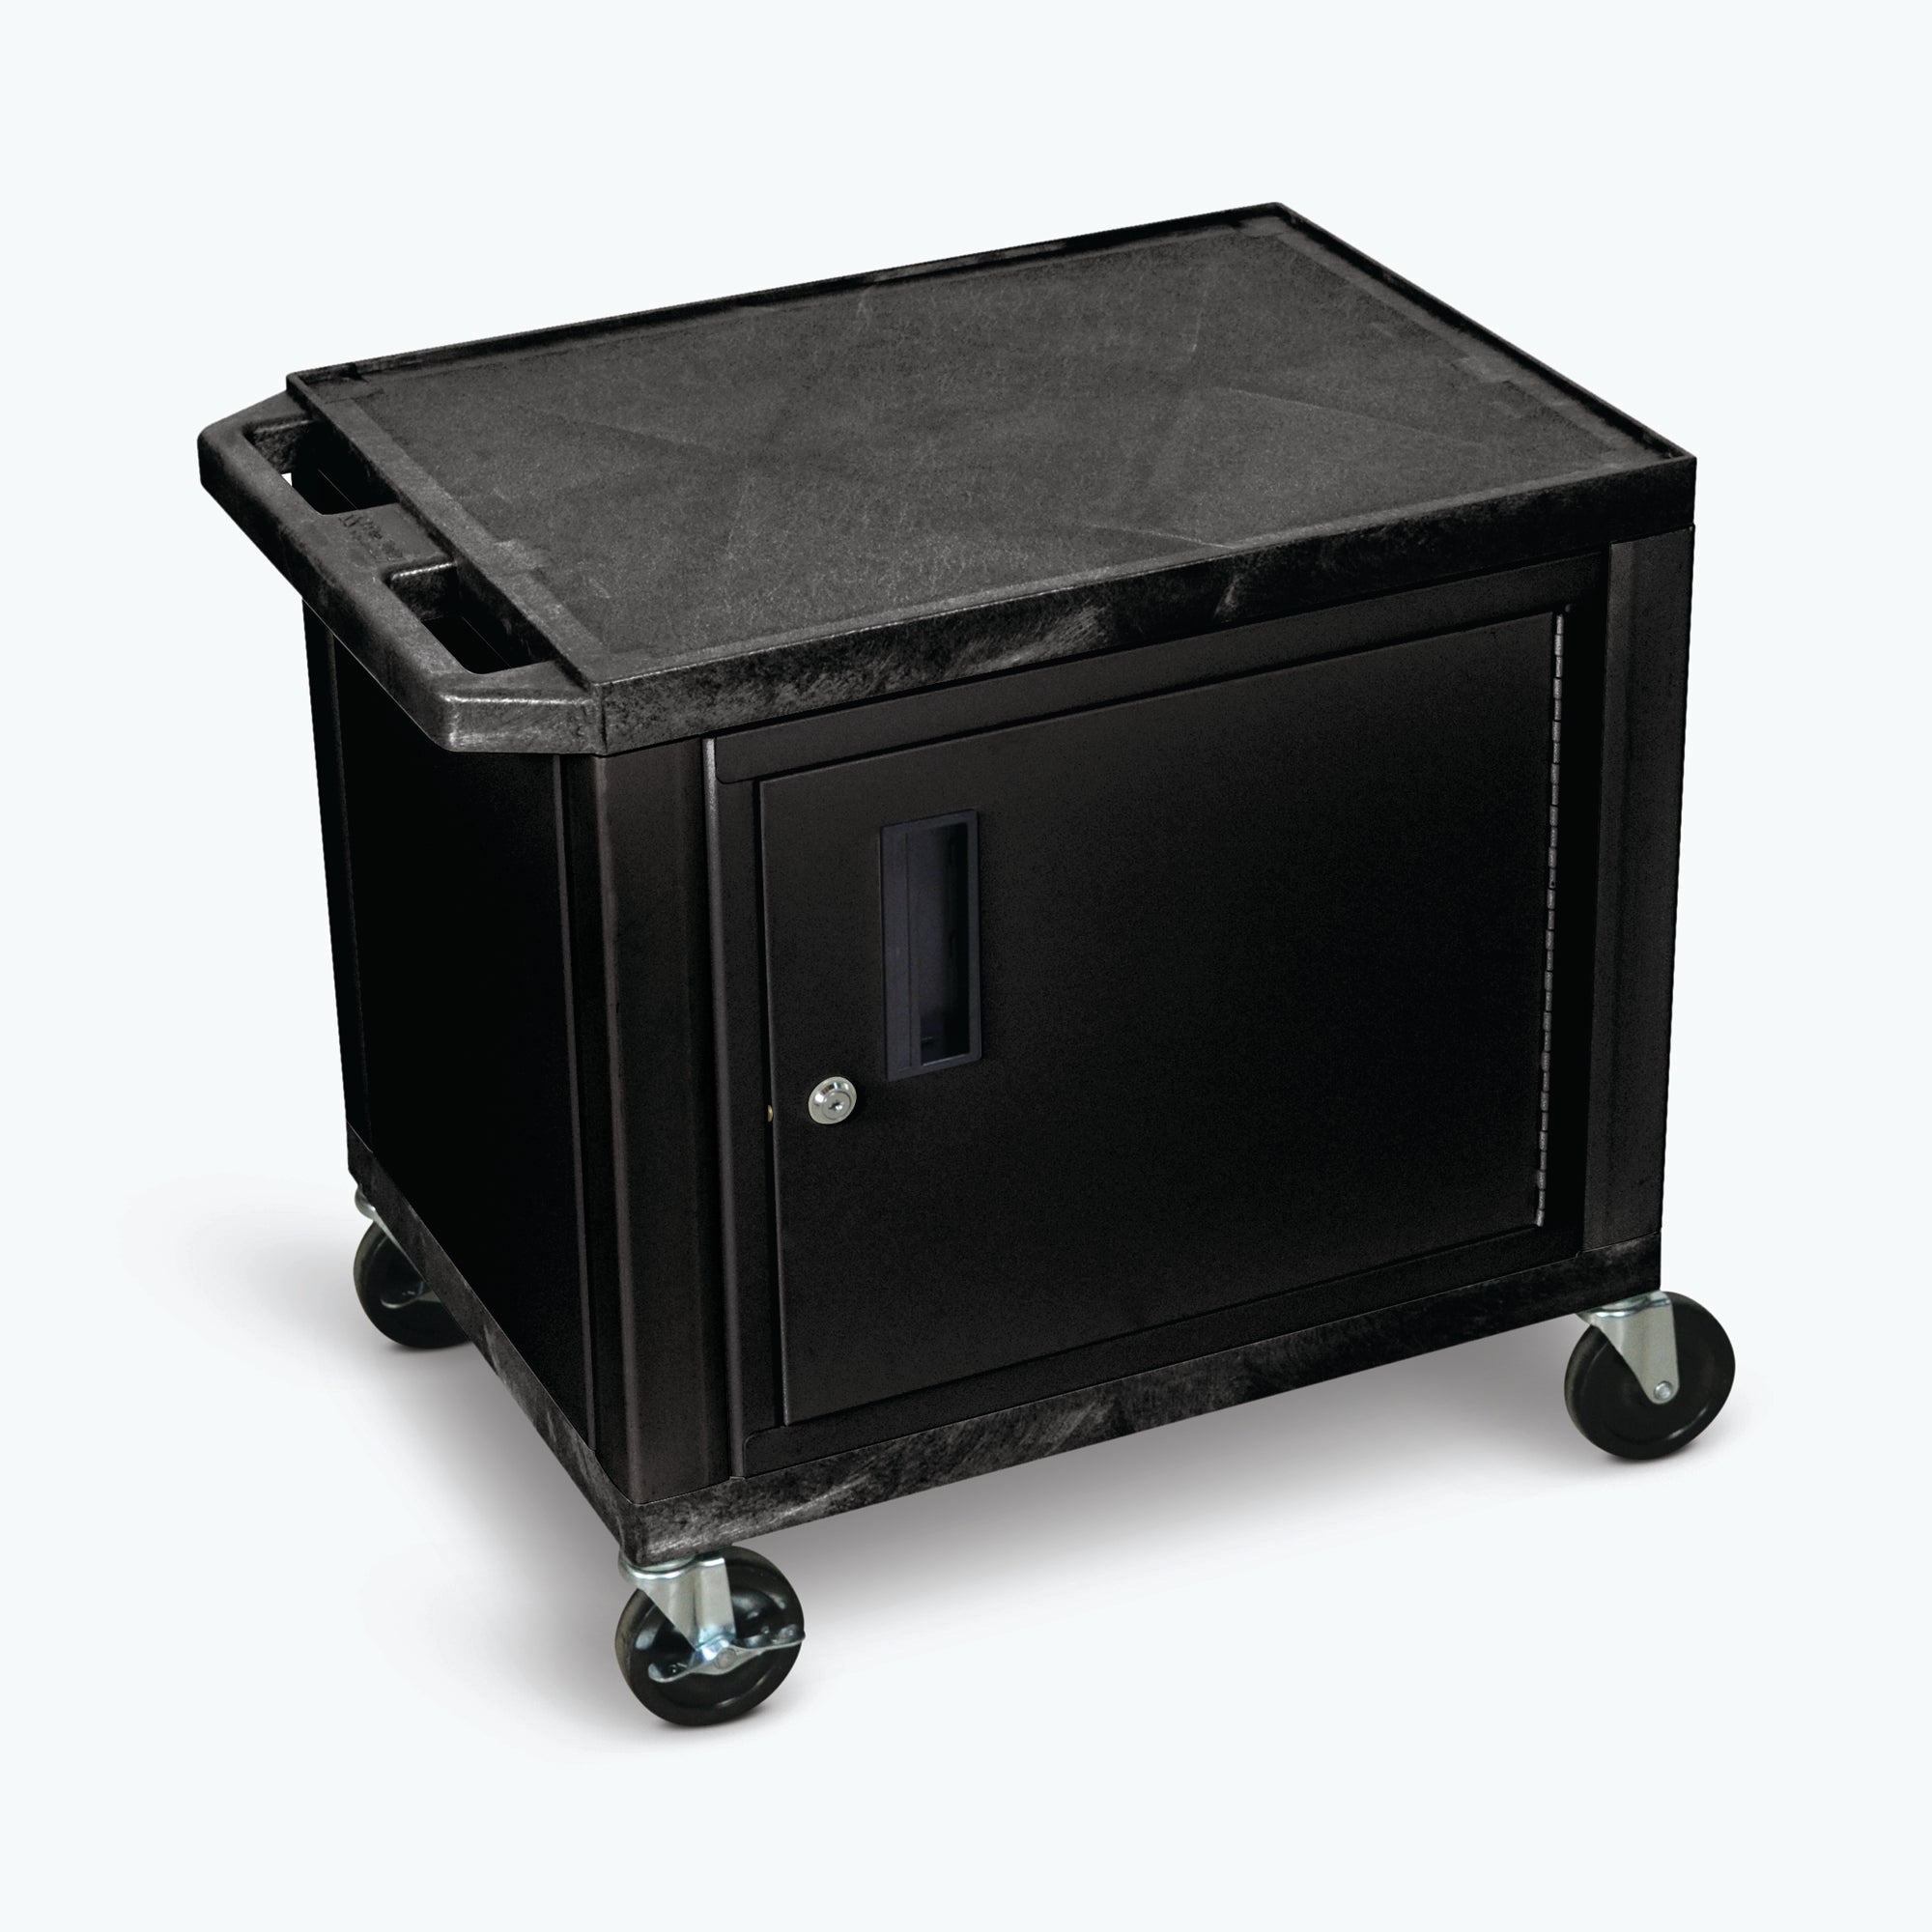 Luxor 26" 2-Shelf Tuffy AV Cart with Electric Assembly, Black Cabinet & Legs (Black Shelves) - WT26C2E